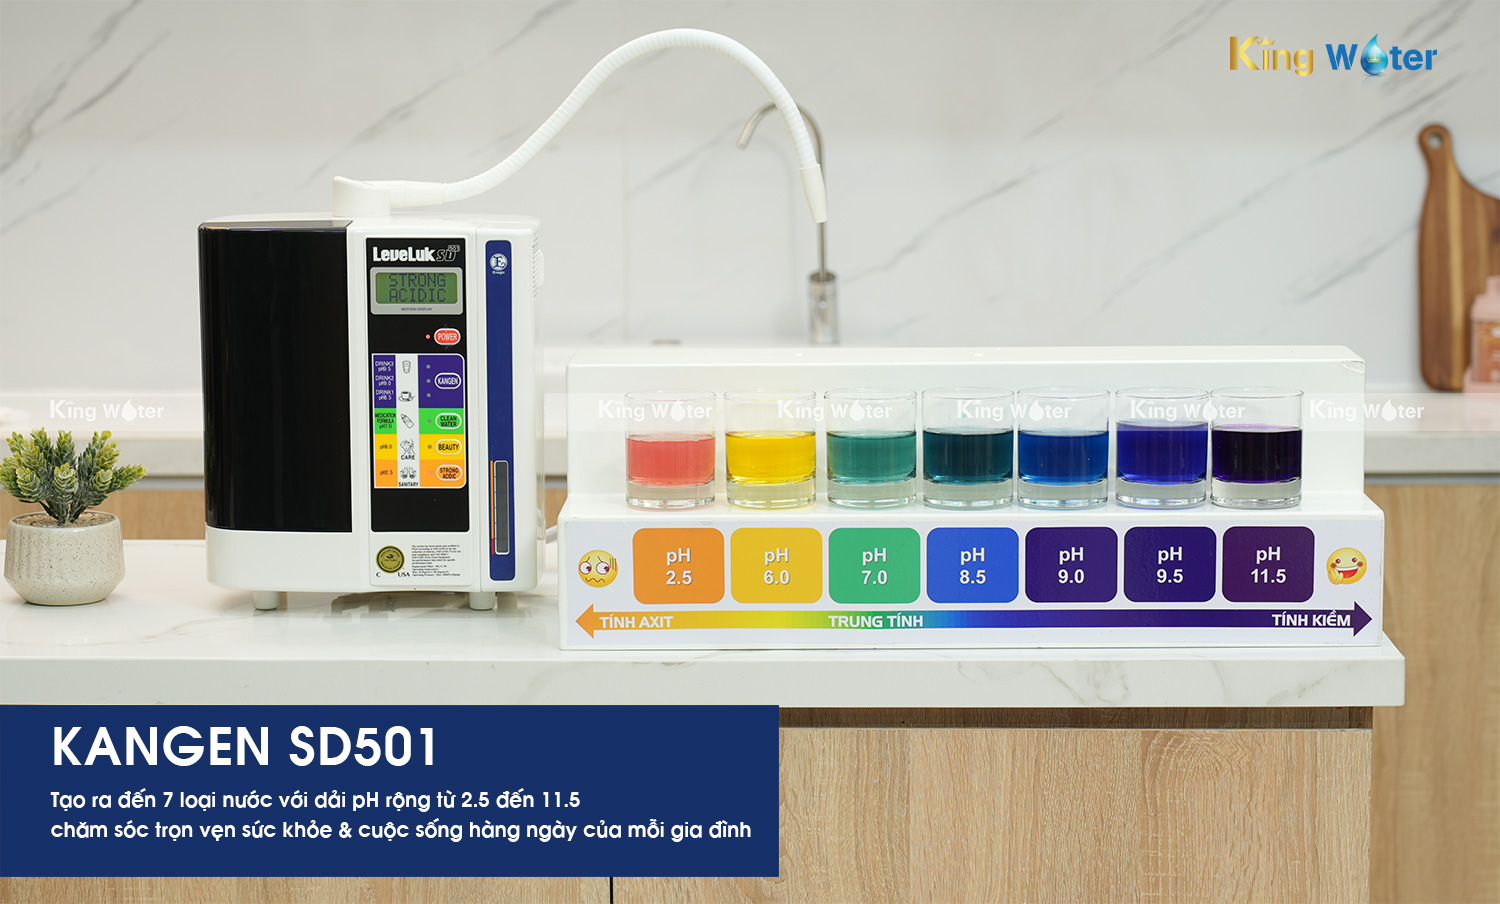 Kangen SD501 tạo ra 7 loại nước với dải pH từ 2.5 đến 11.5